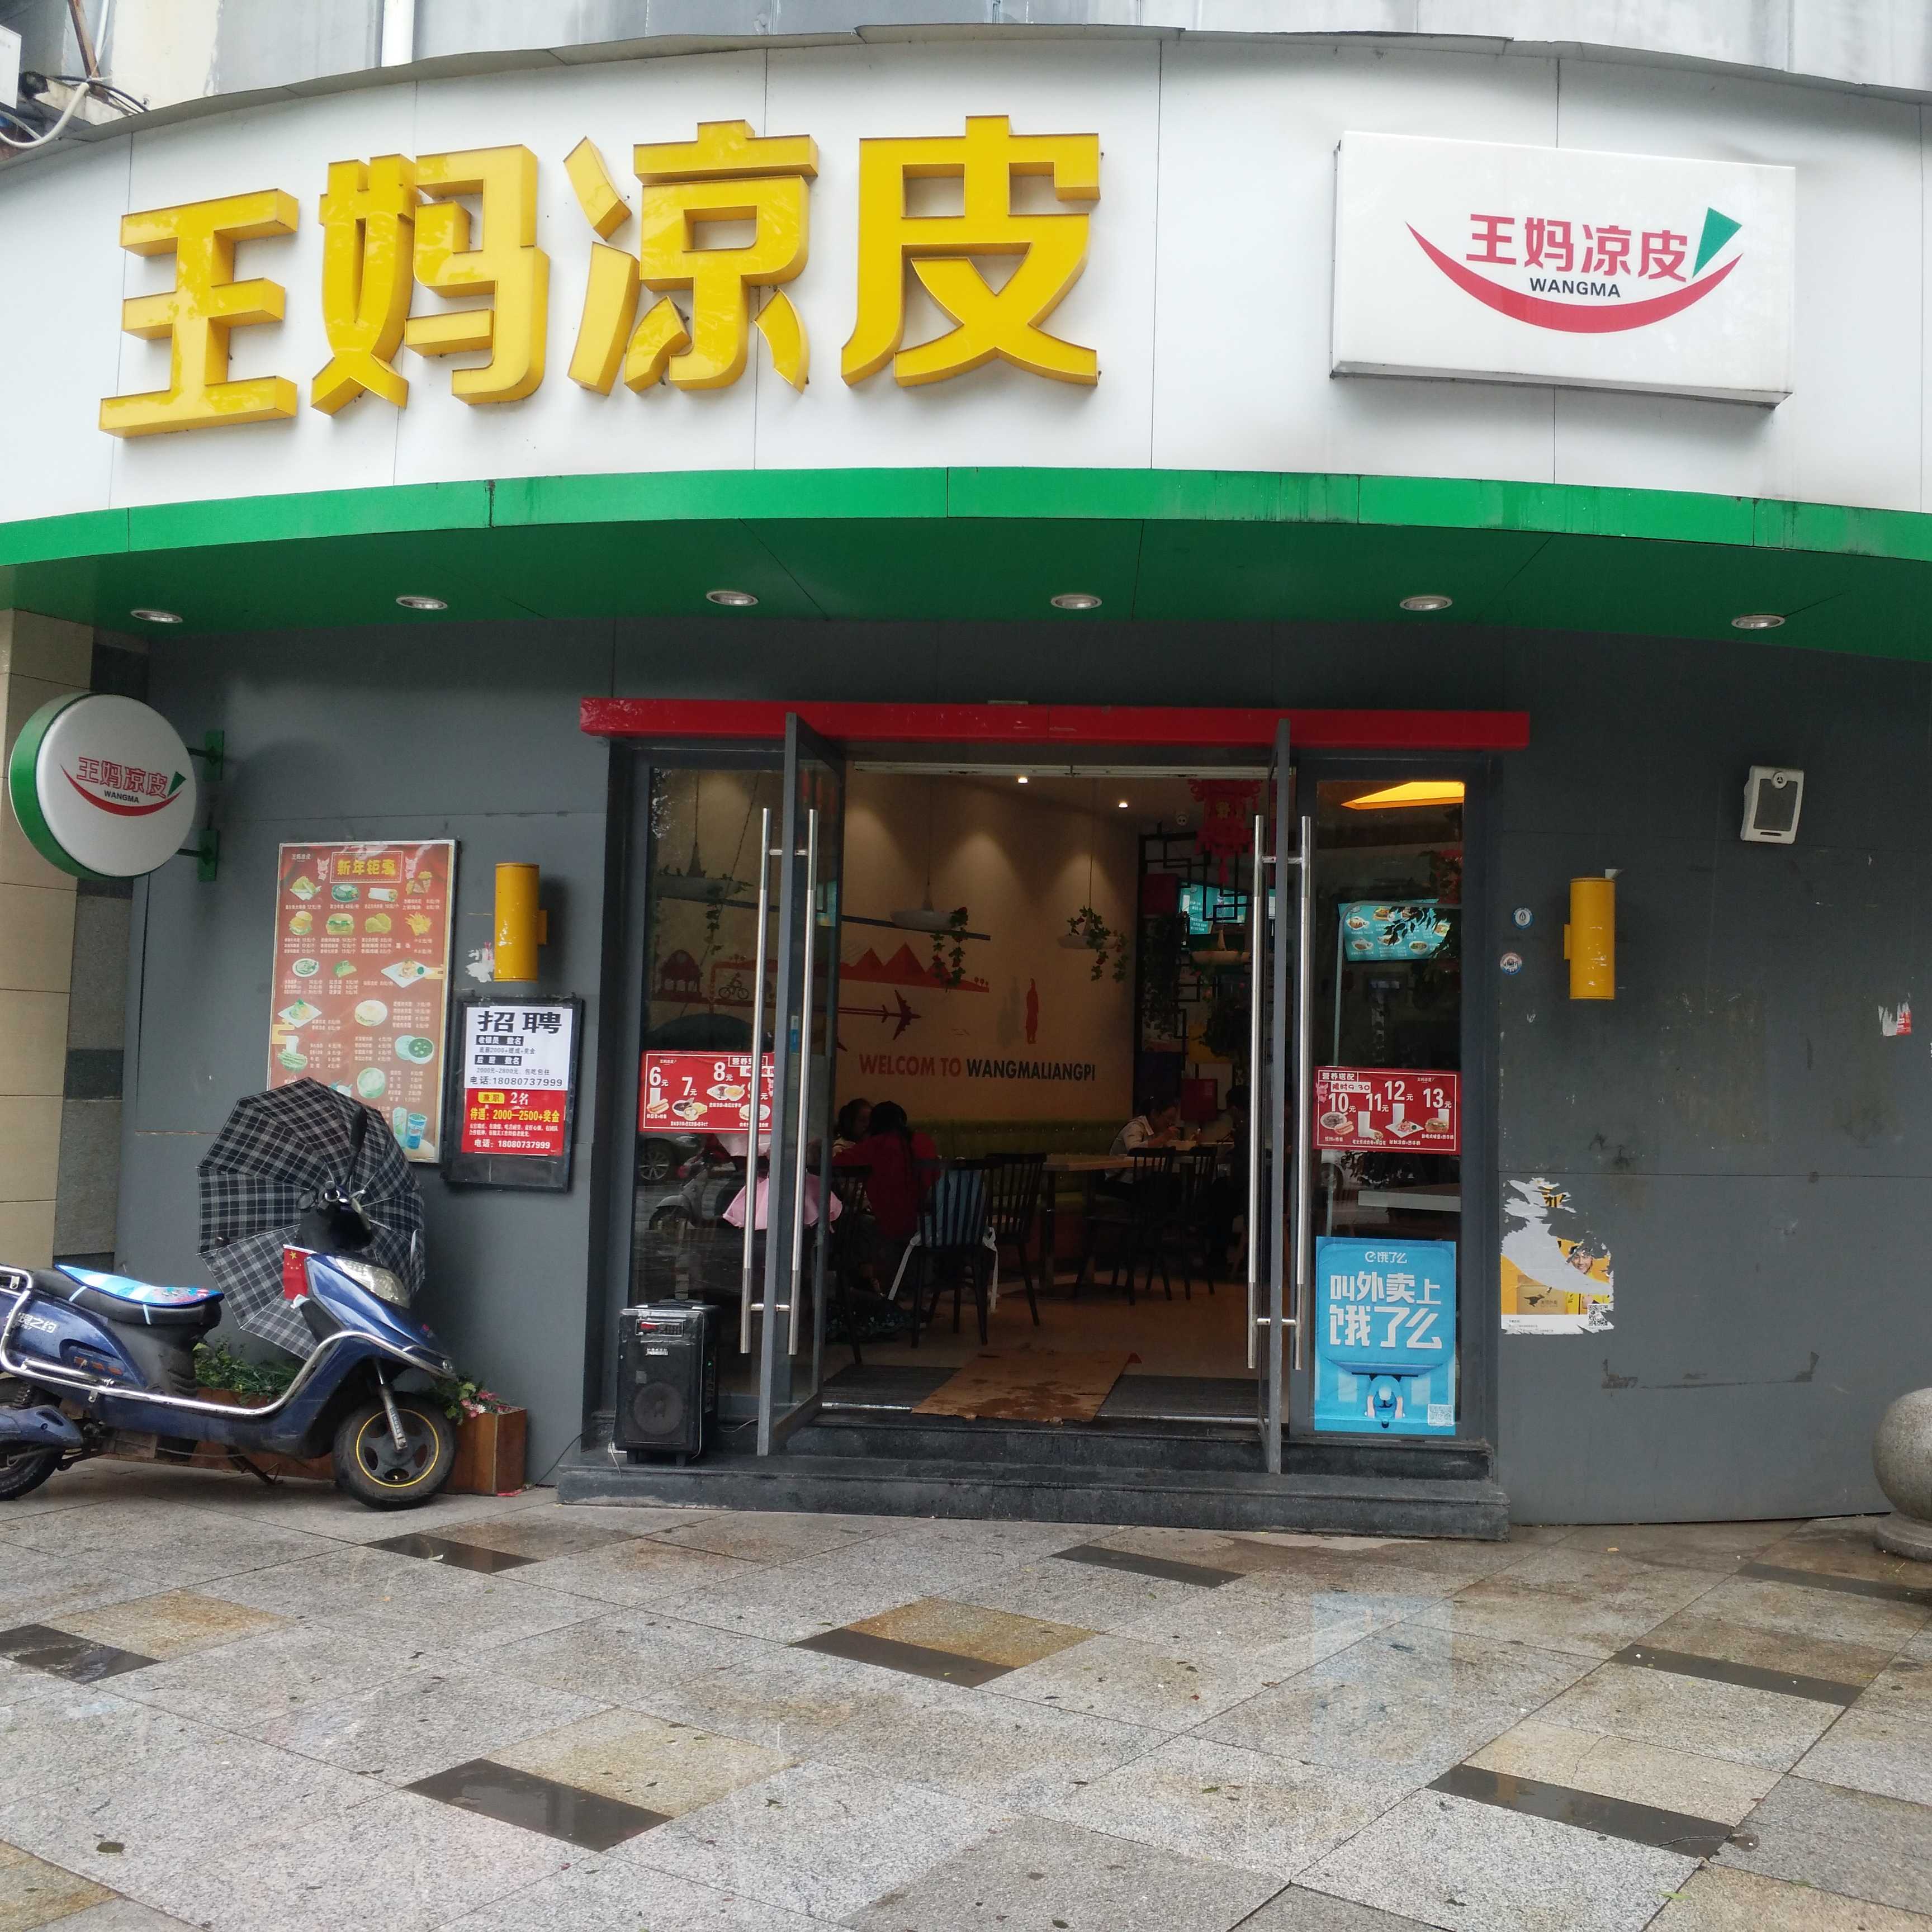 广元市城区王妈小吃店